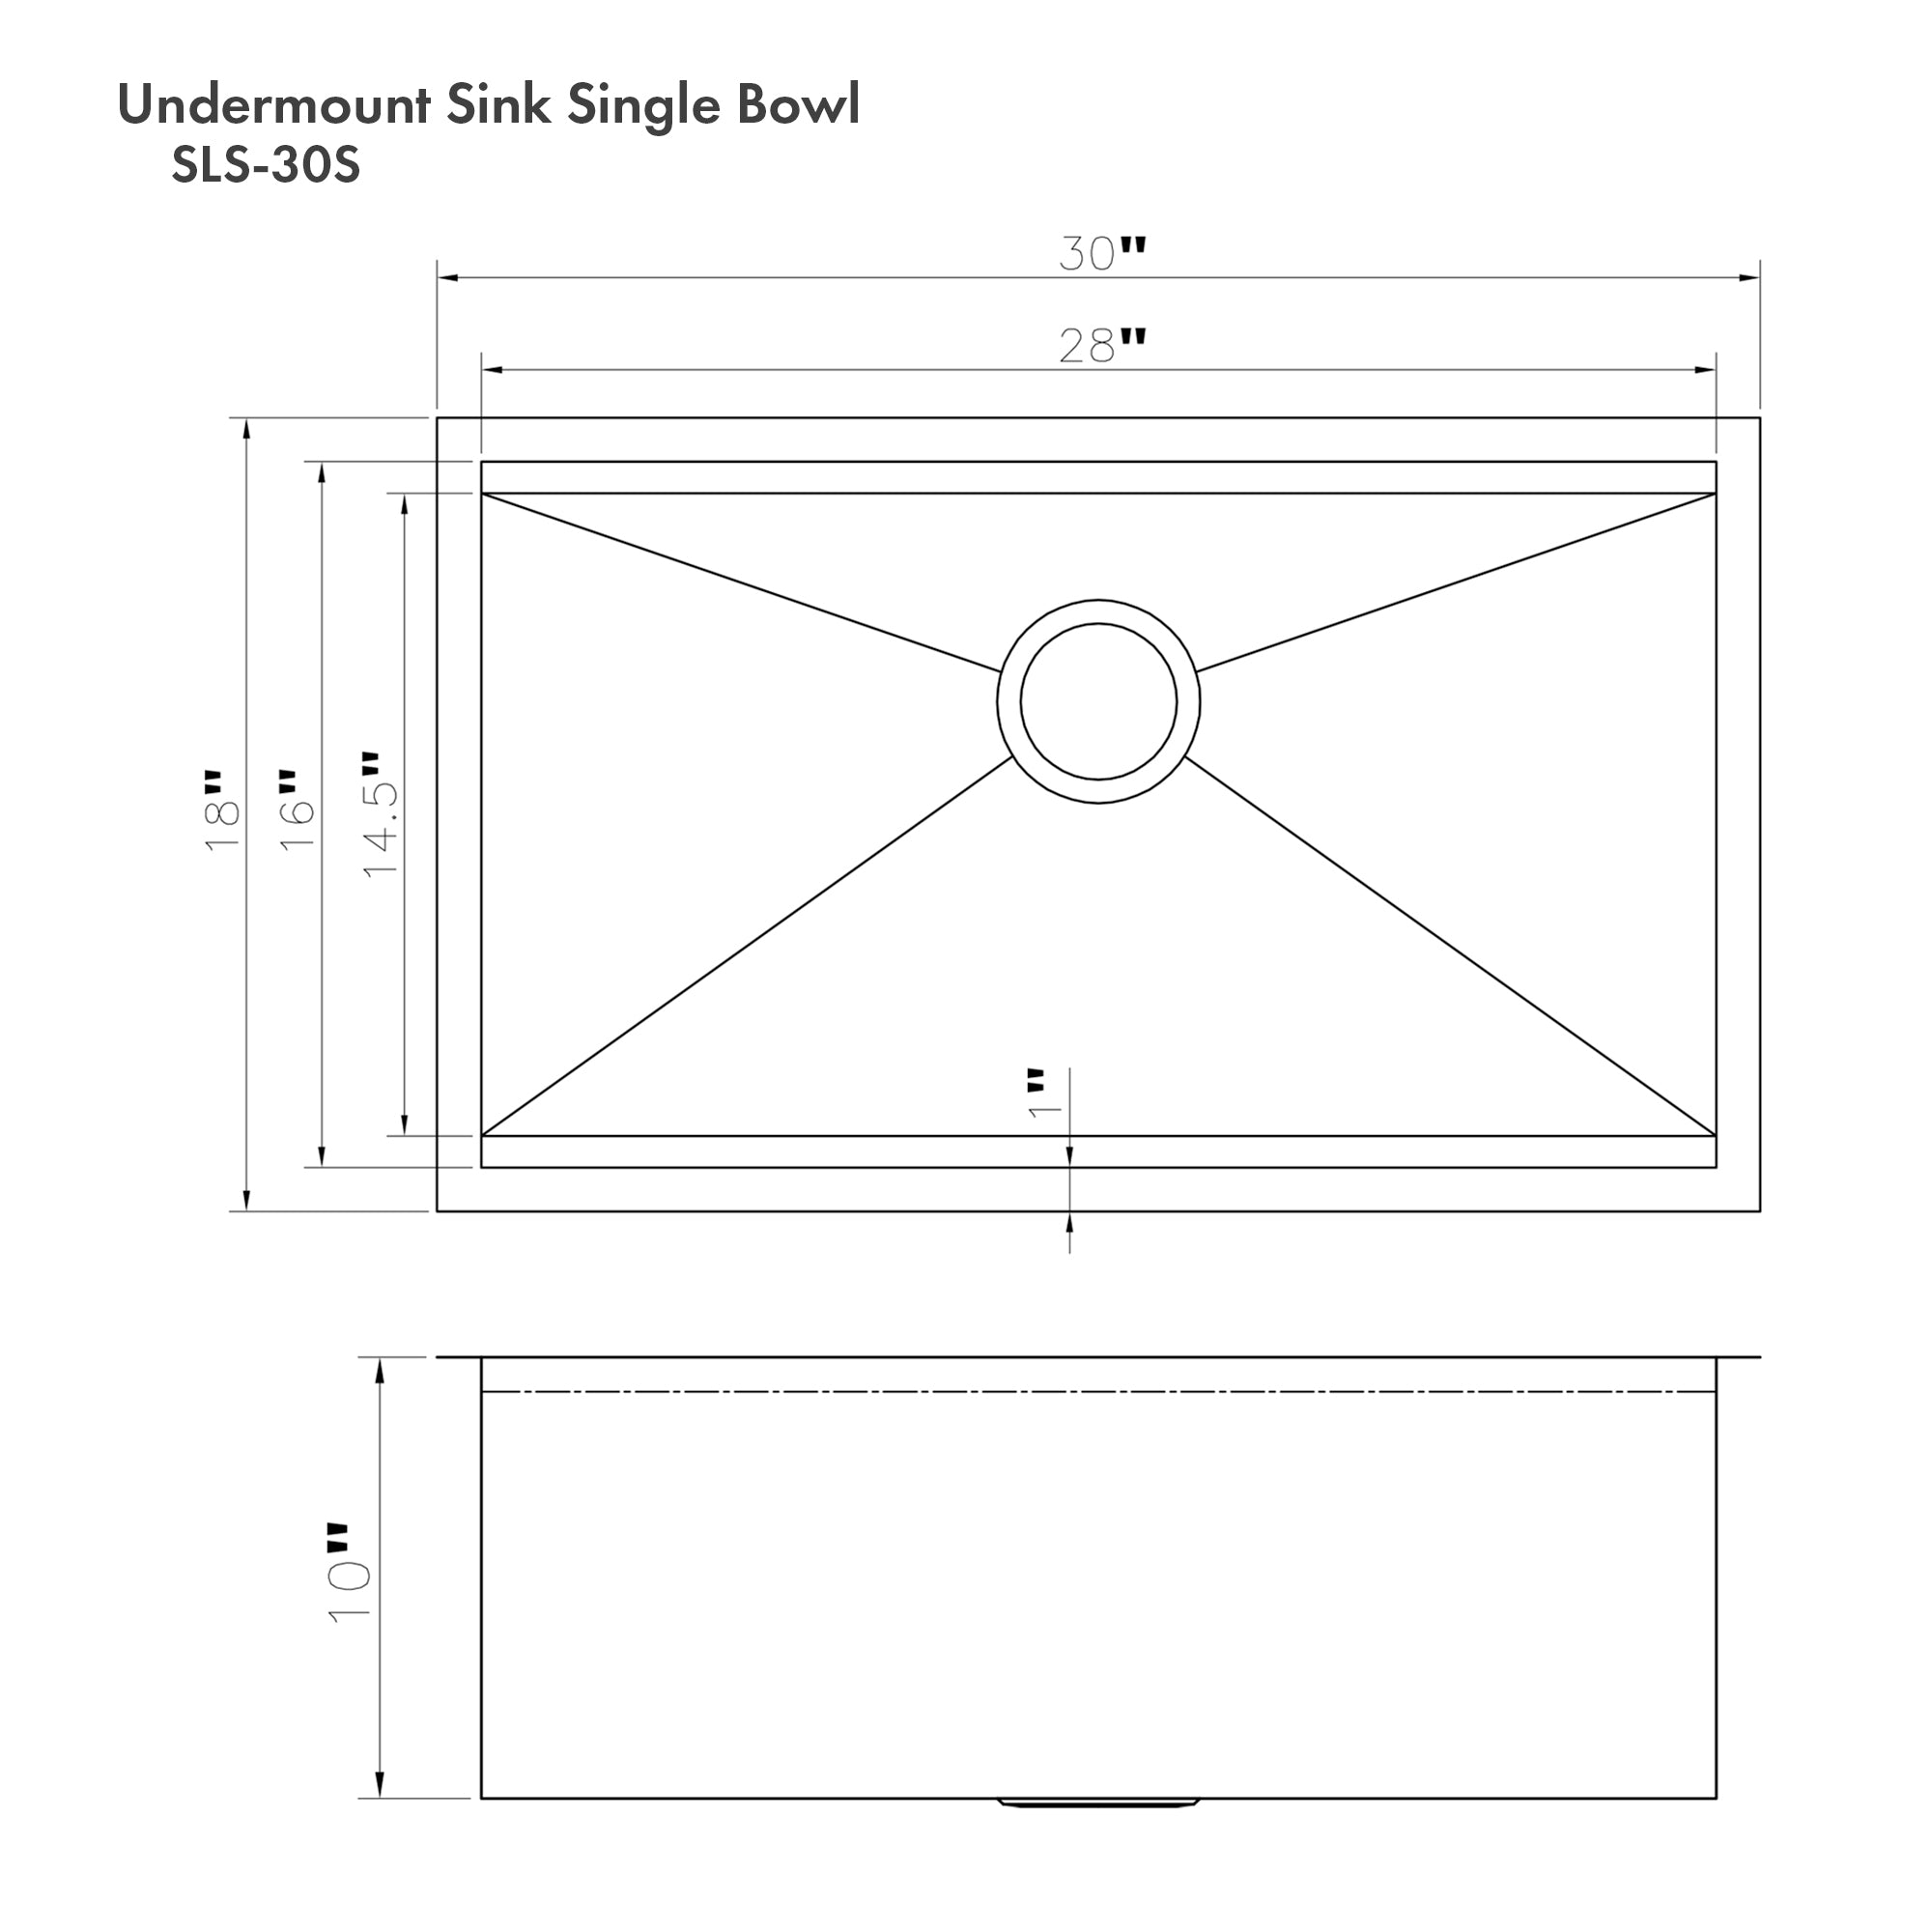 ZLINE 30 in. Garmisch Undermount Single Bowl Kitchen Sink with Bottom Grid and Accessories (SLS-30) dimensional diagram with measurements.